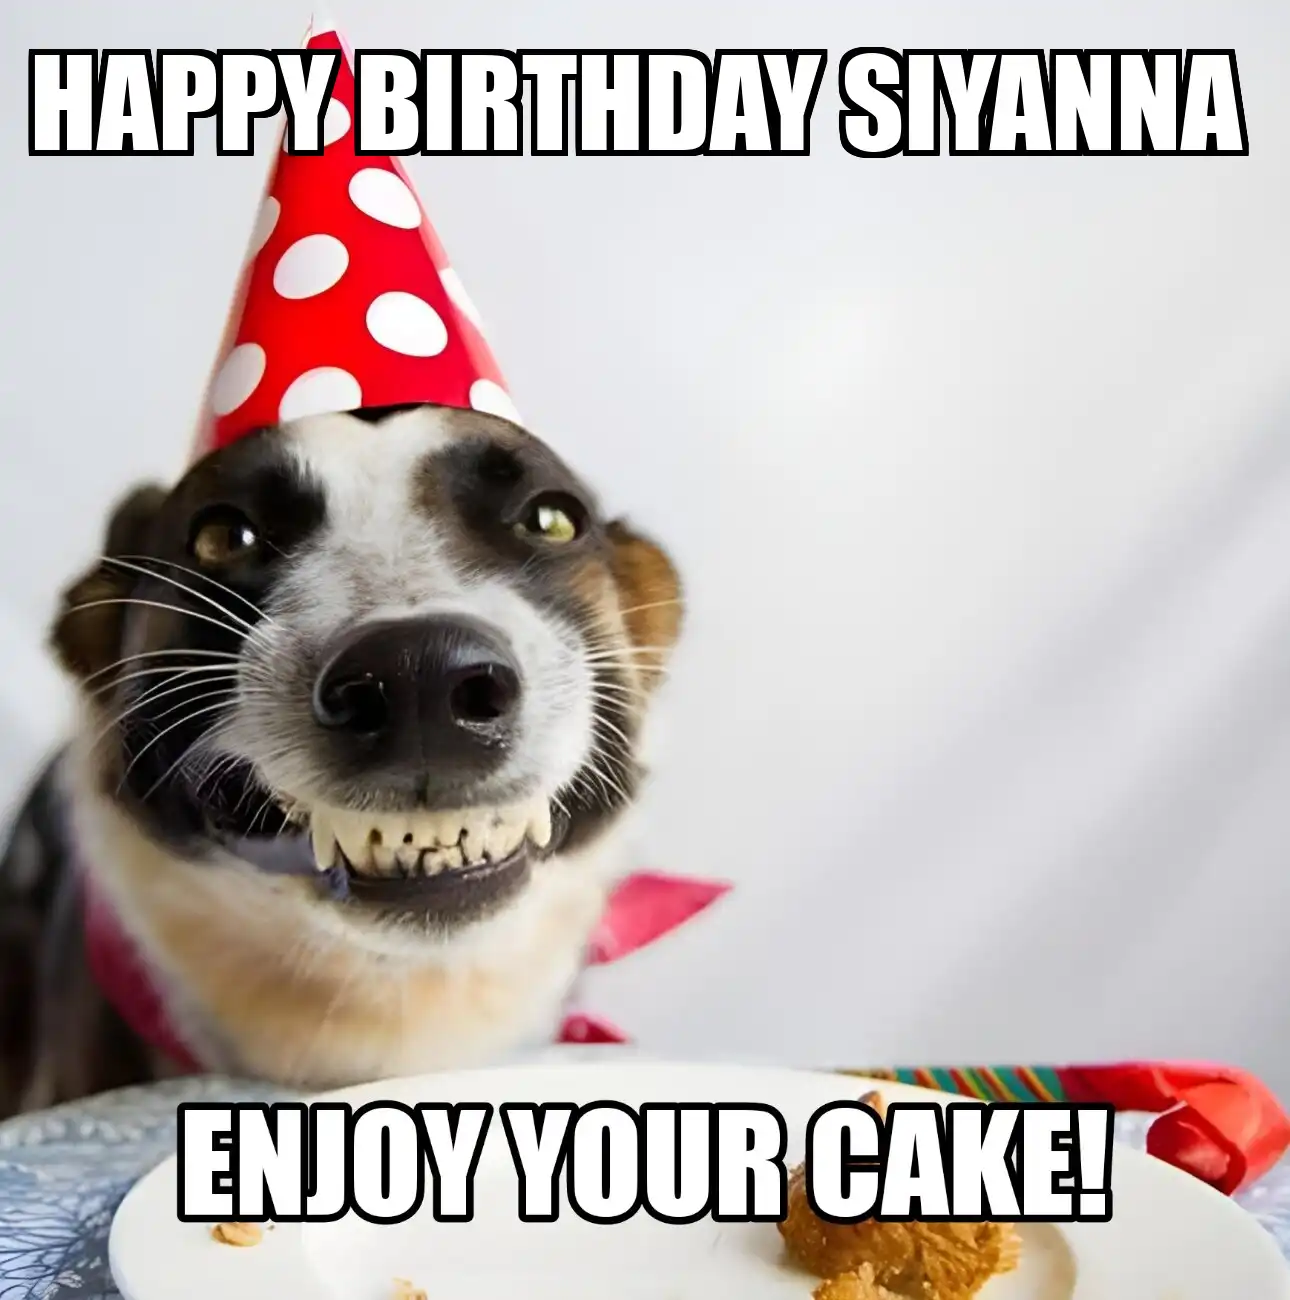 Happy Birthday Siyanna Enjoy Your Cake Dog Meme